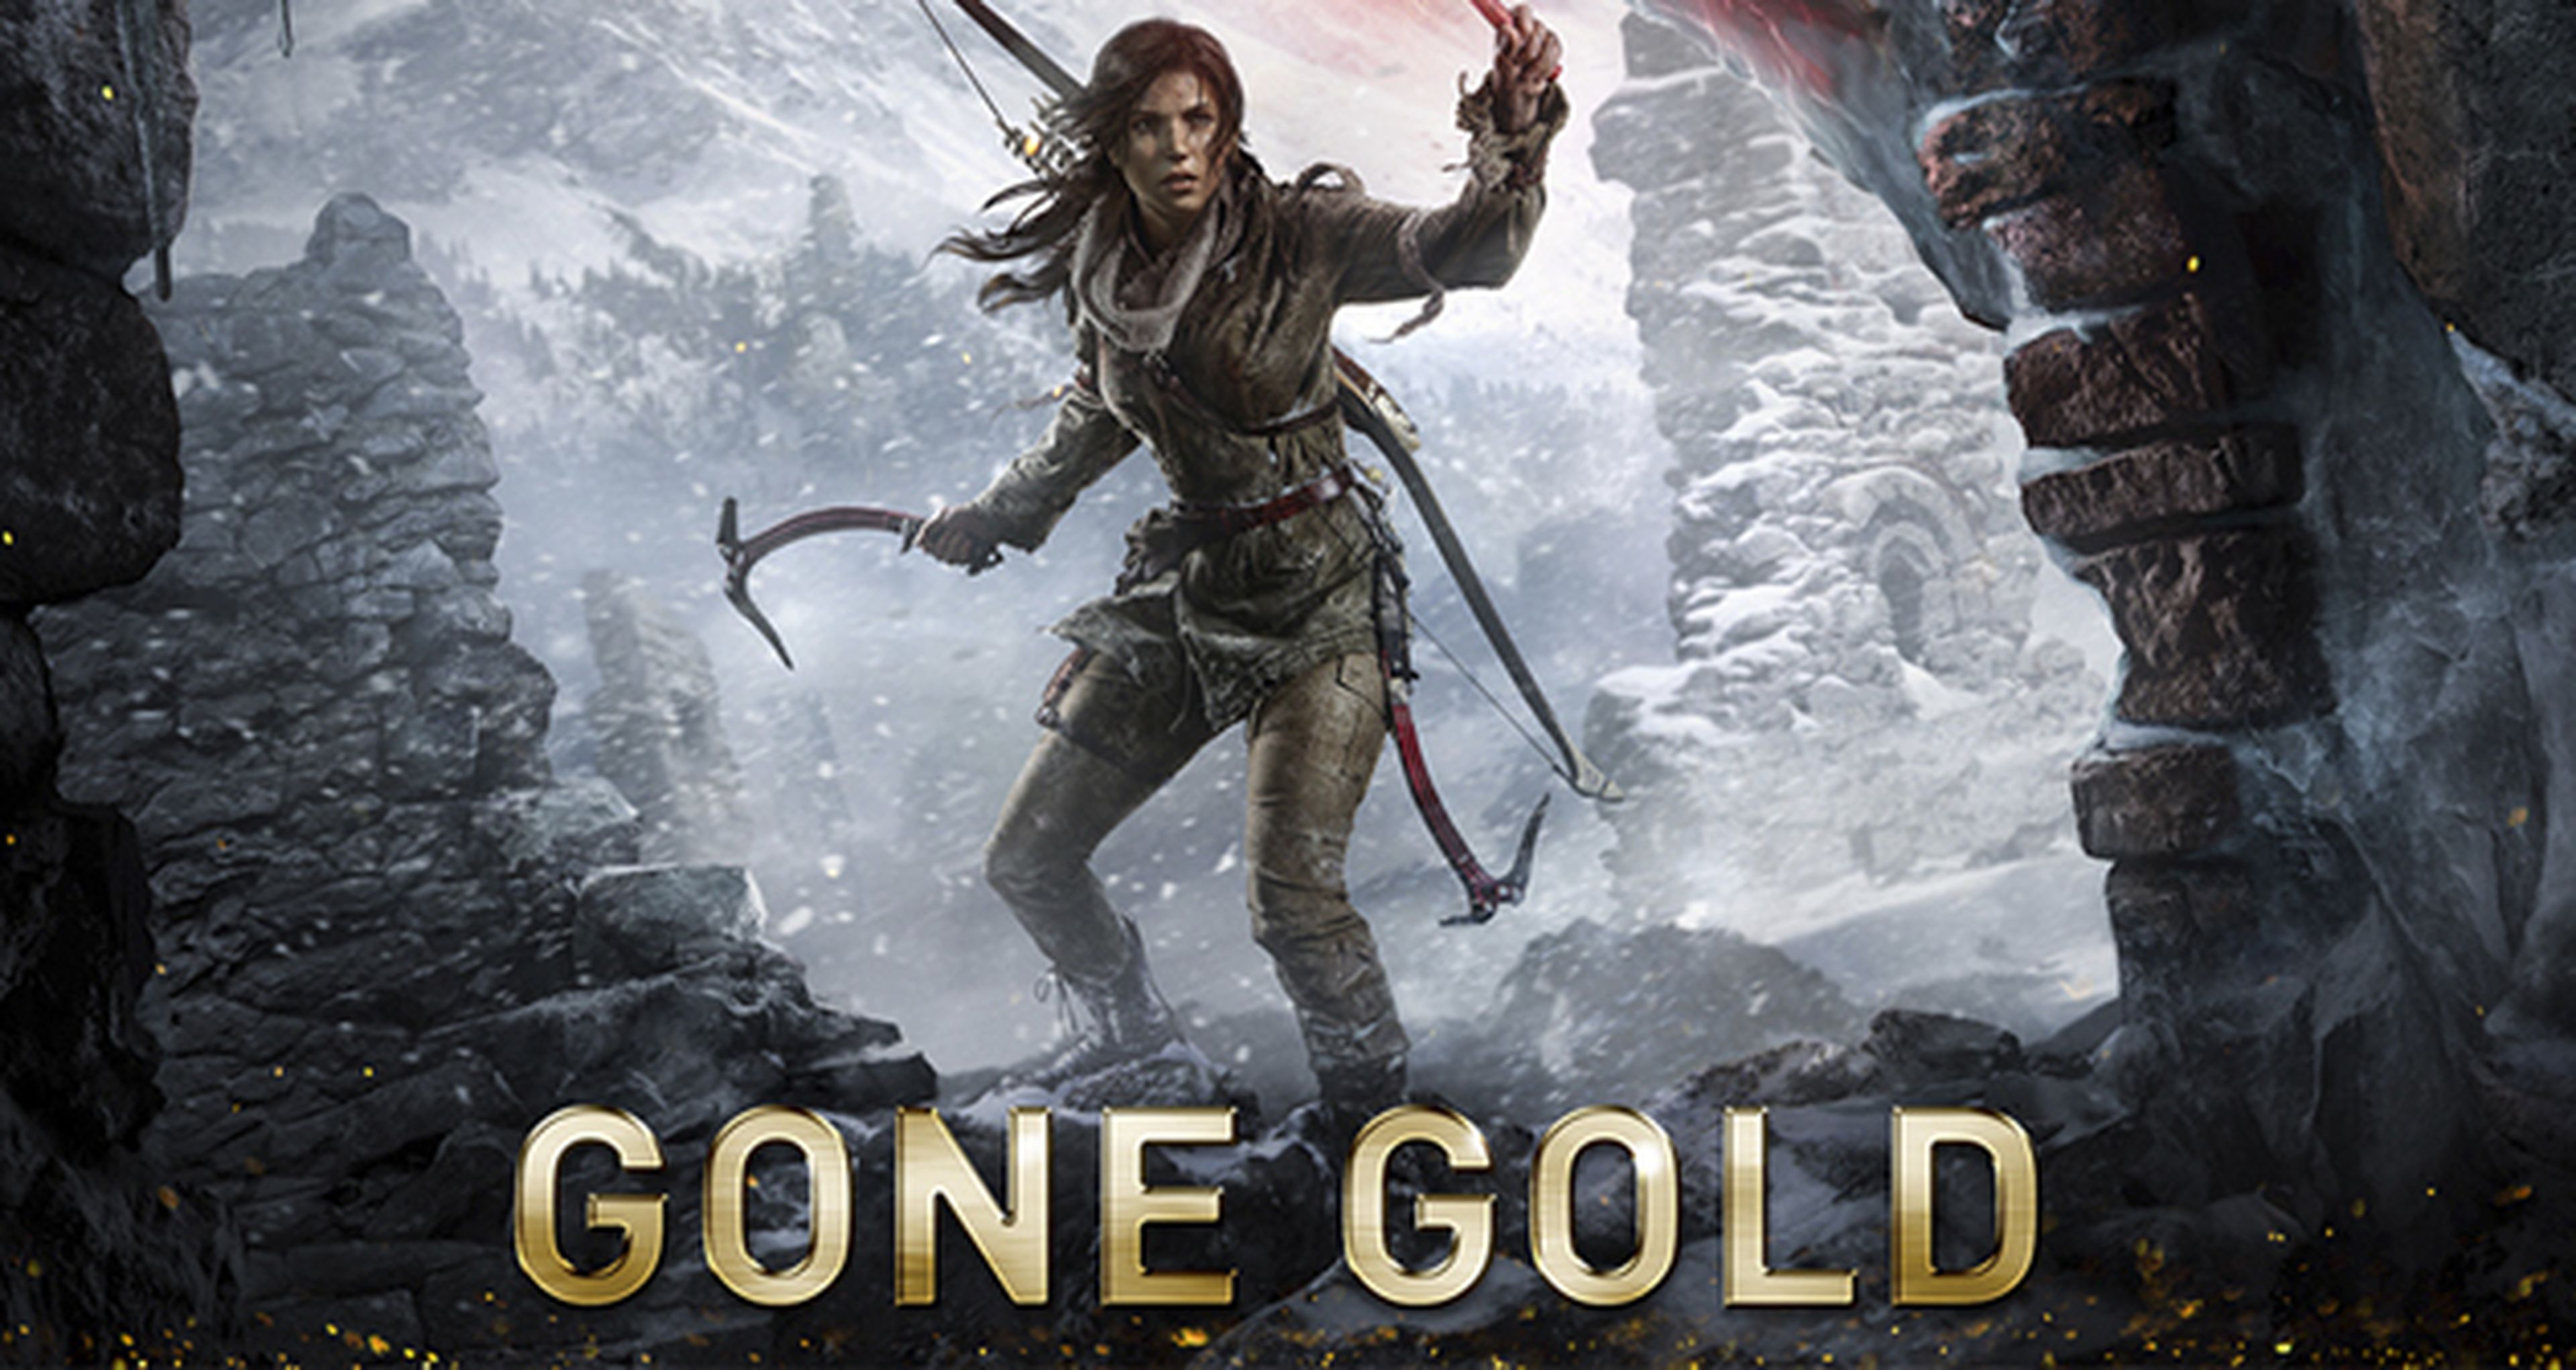 Rise of the Tomb Raider alcanza la etapa Gold